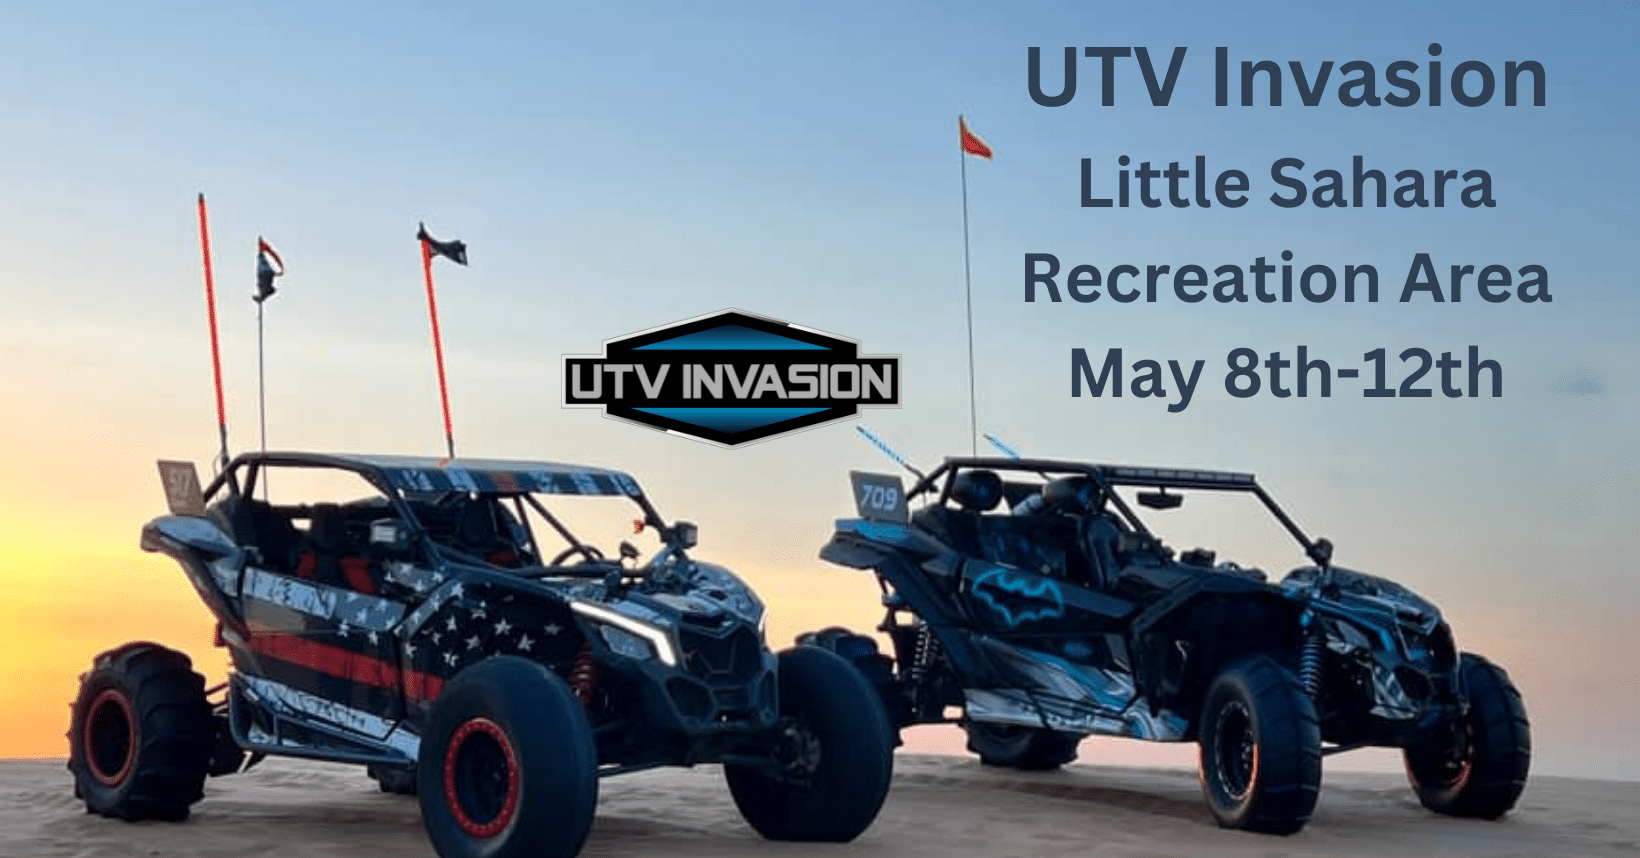 UTV Invasion Little Sahara Recreation Area